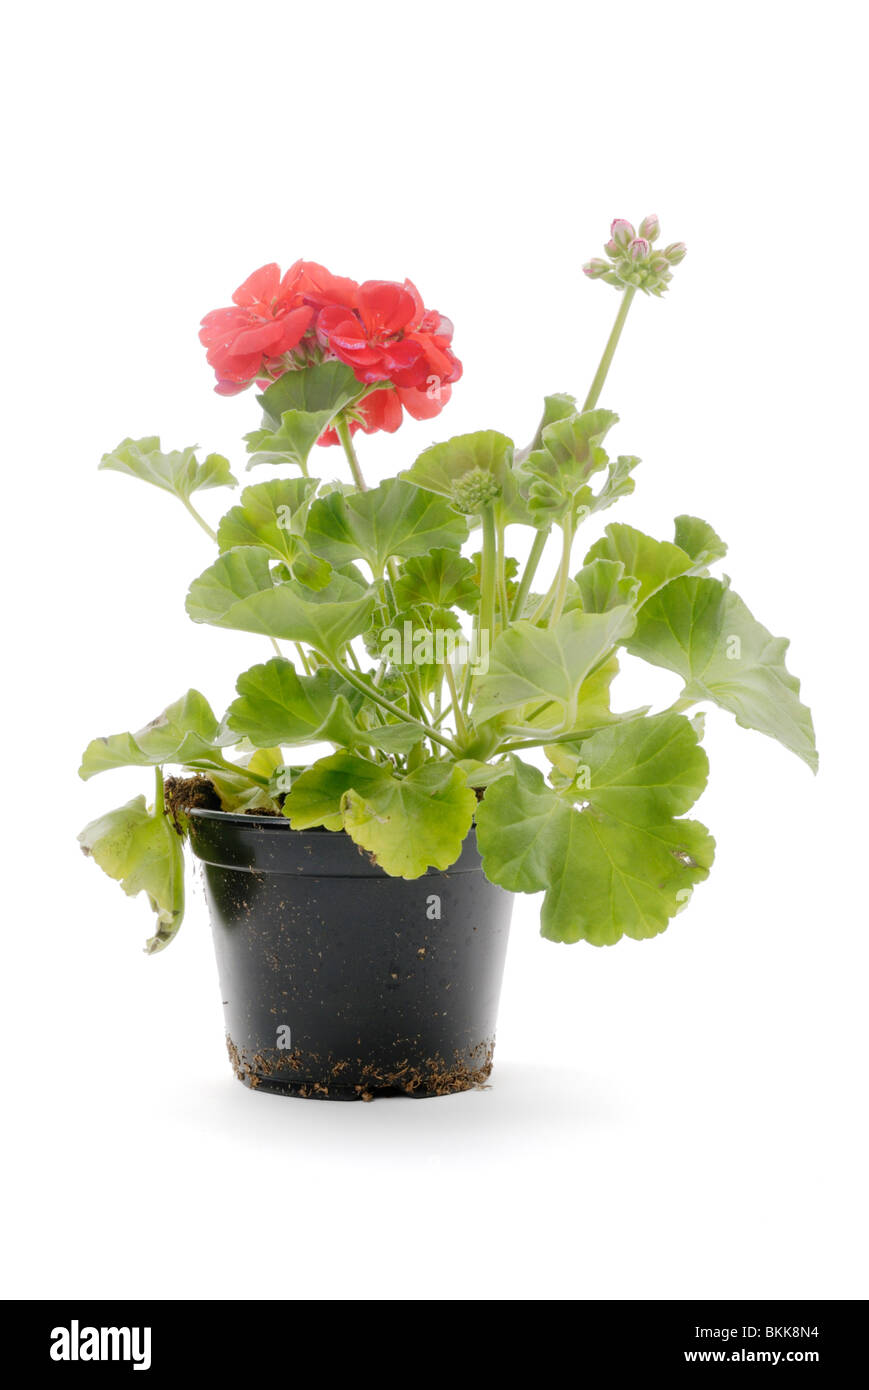 Les jeunes fleurs de Pélargonium cultivé en conteneur en plastique Banque D'Images